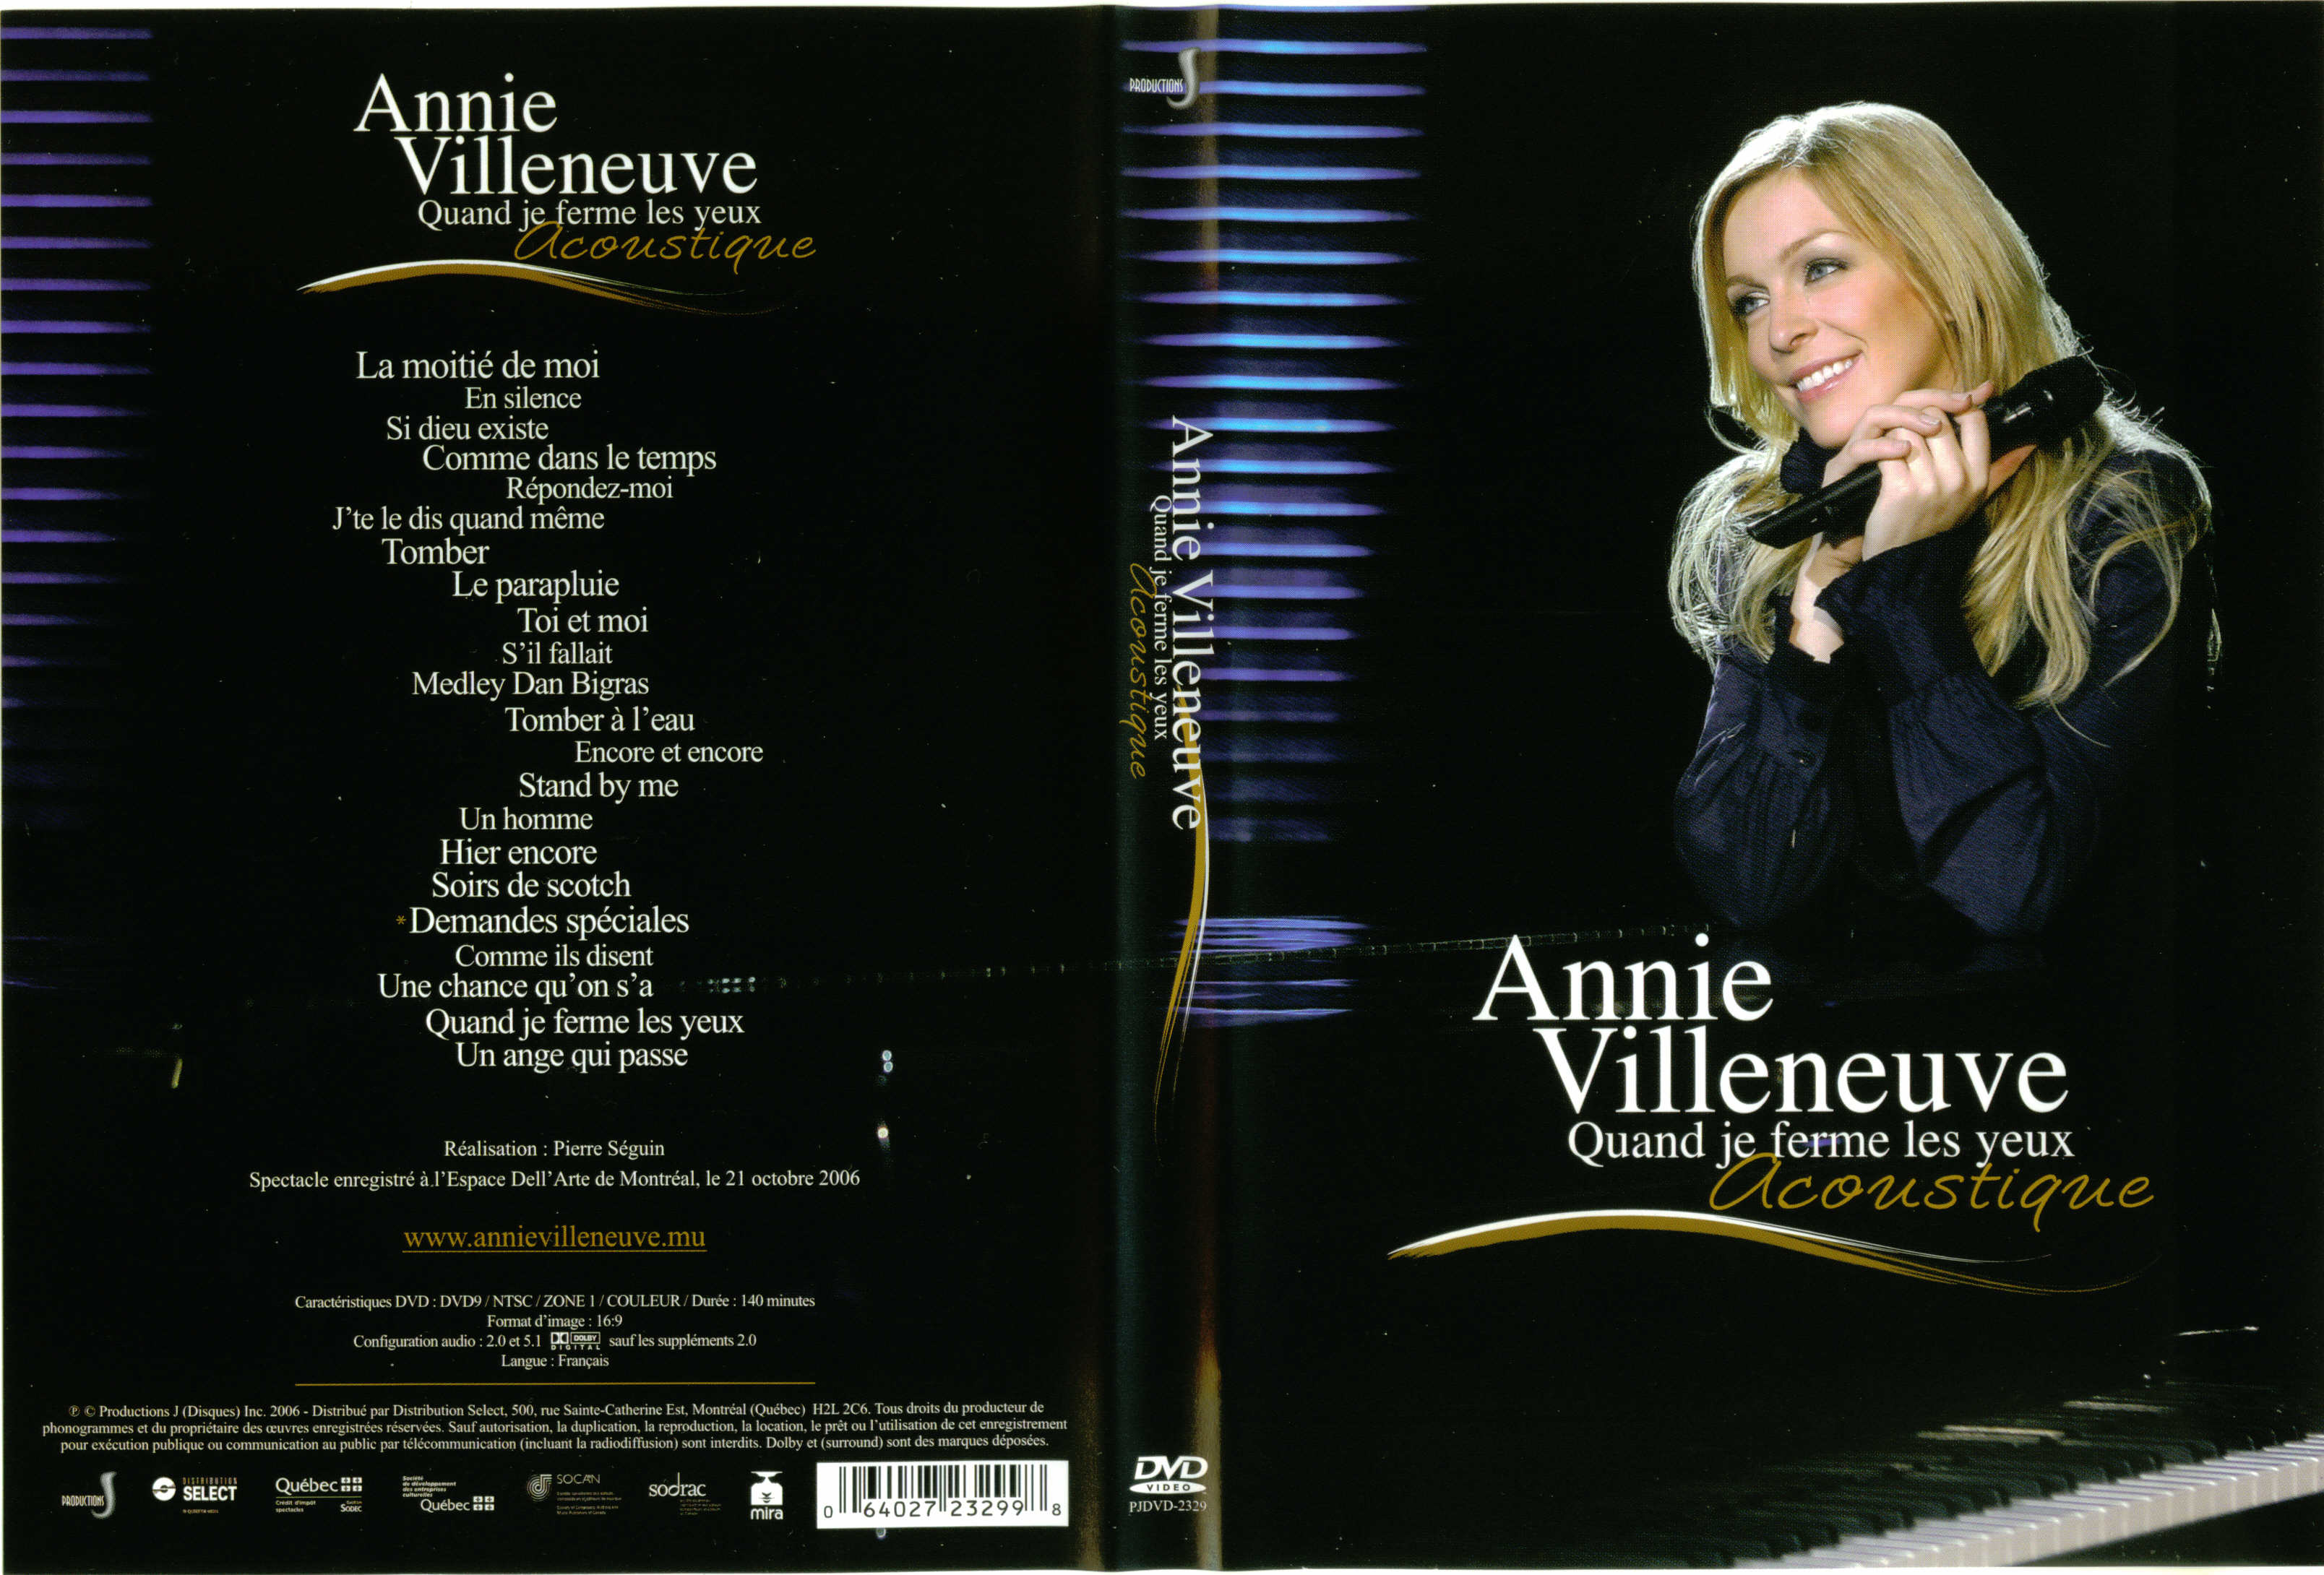 Jaquette DVD Annie Villeneuve Quand je ferme les yeux Acoustique